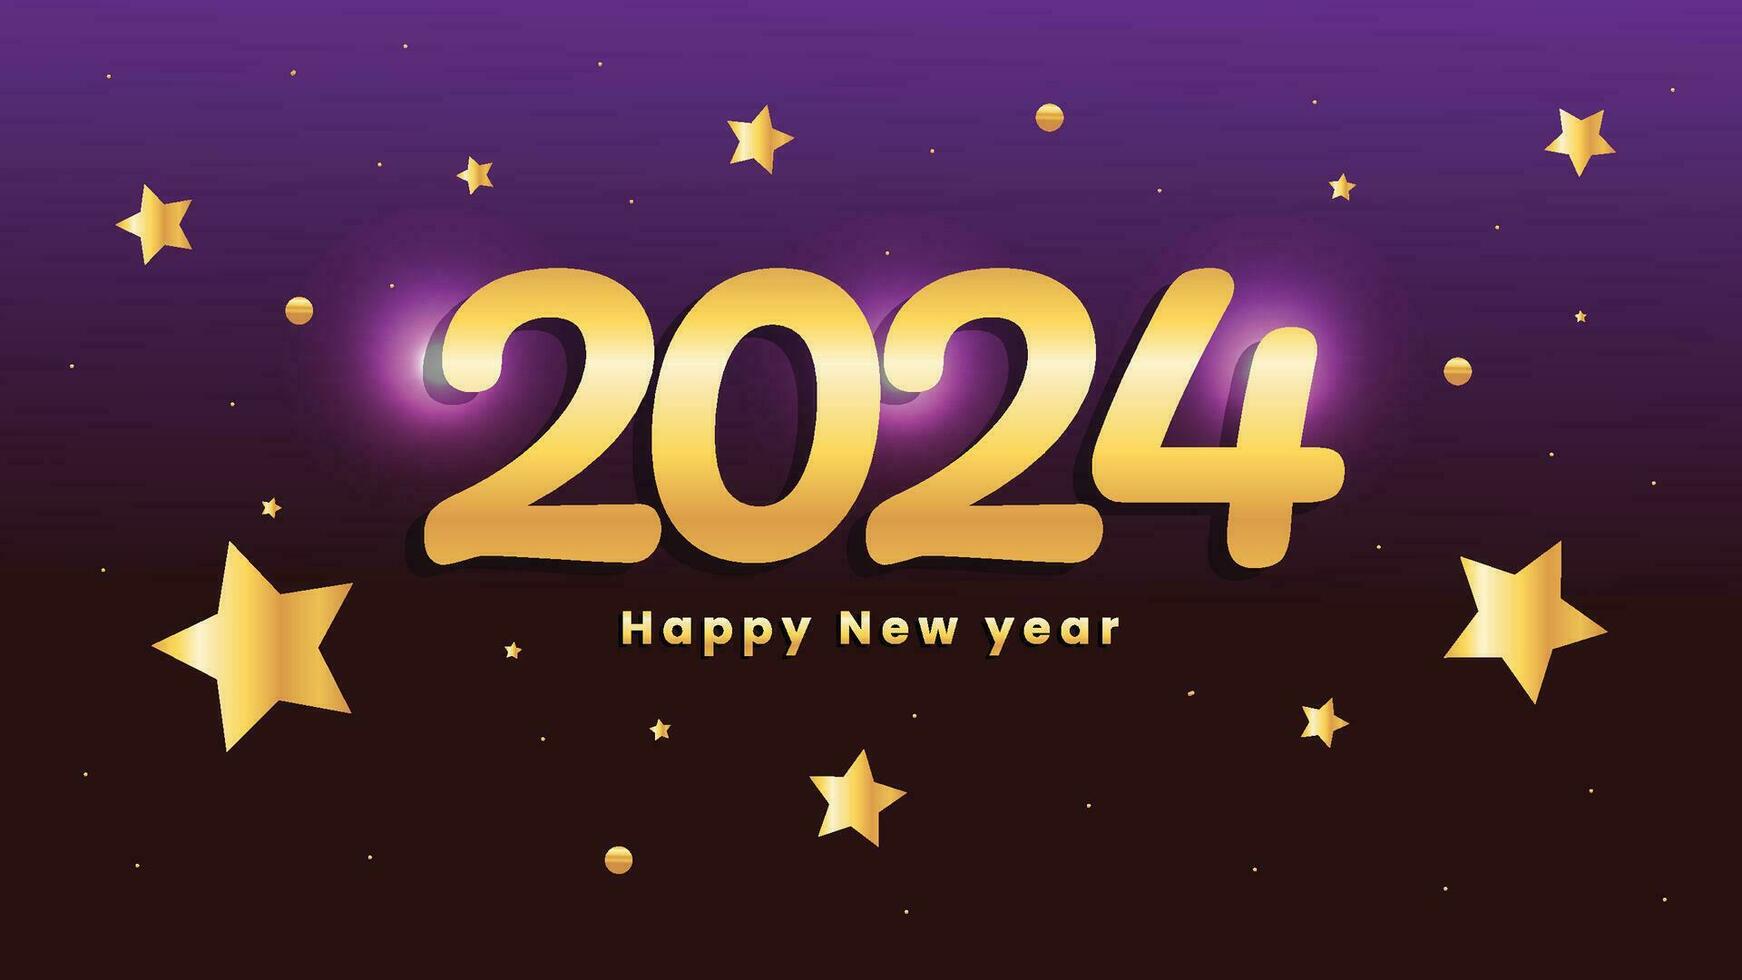 contento nuevo año 2024 antecedentes diseño modelo vector